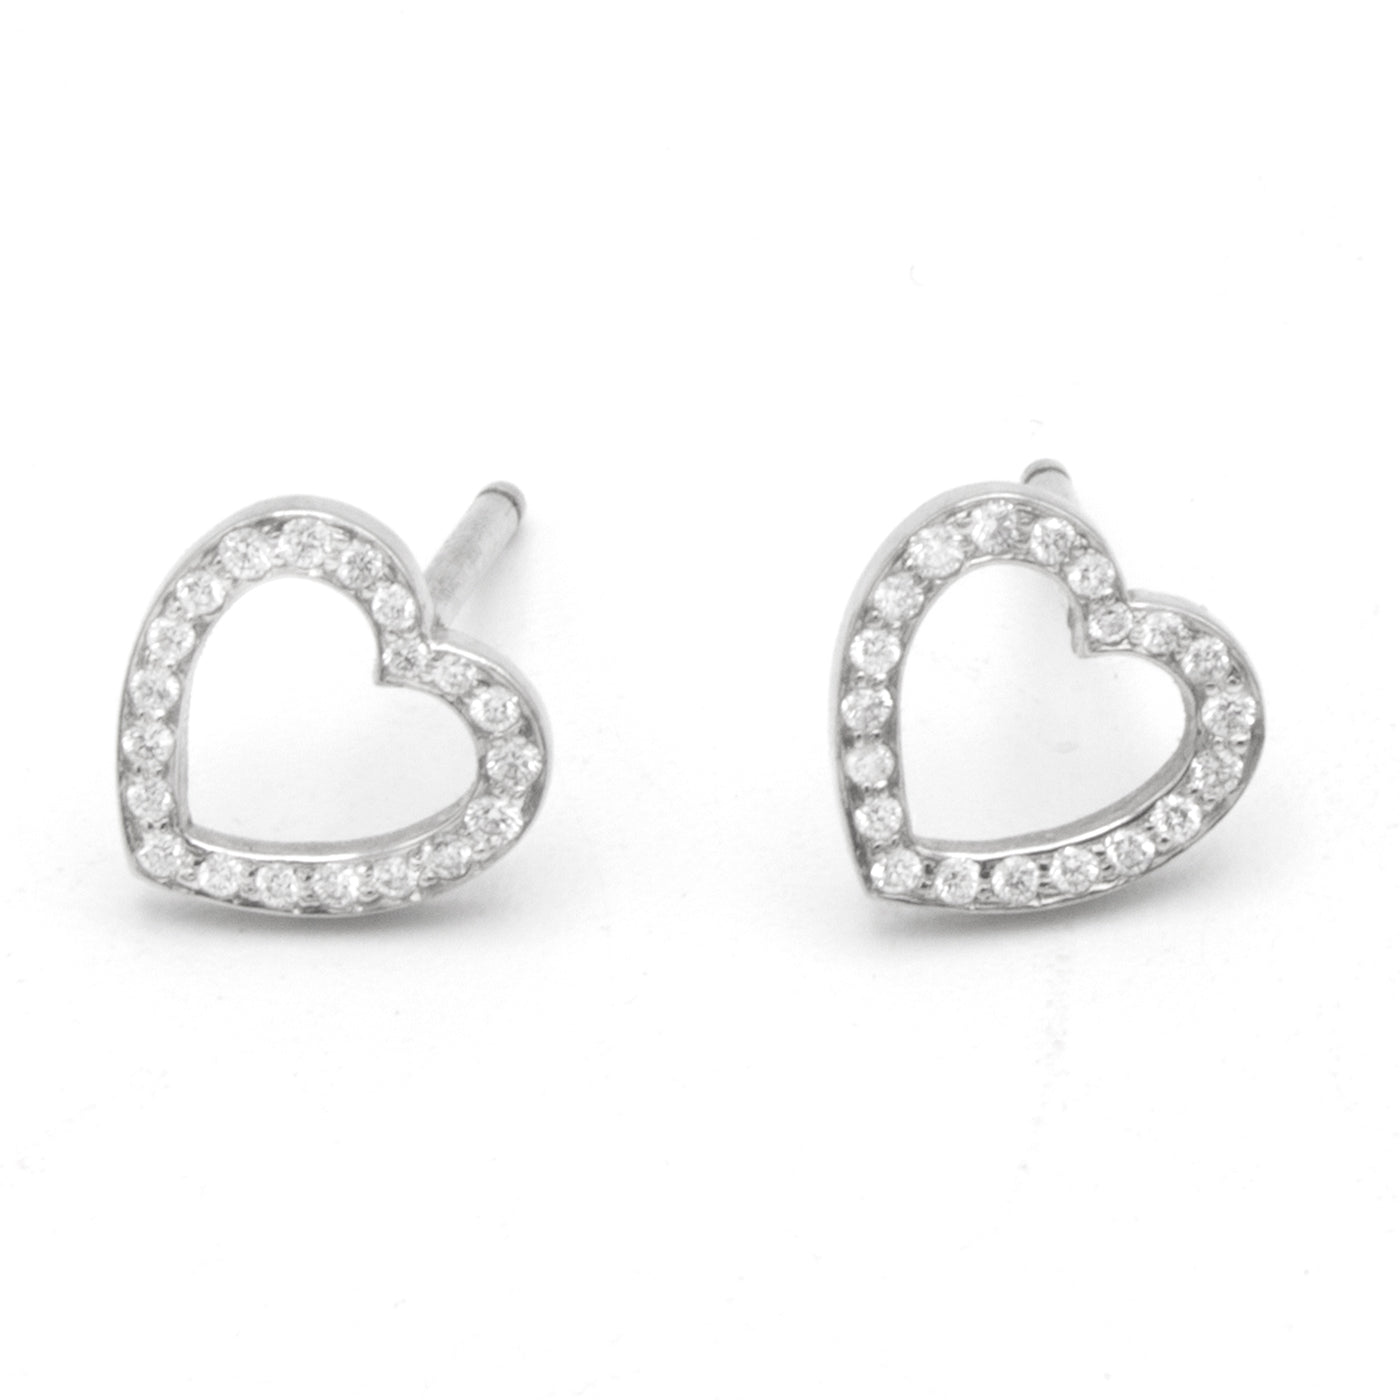 Tiffany & Co Metro earrings